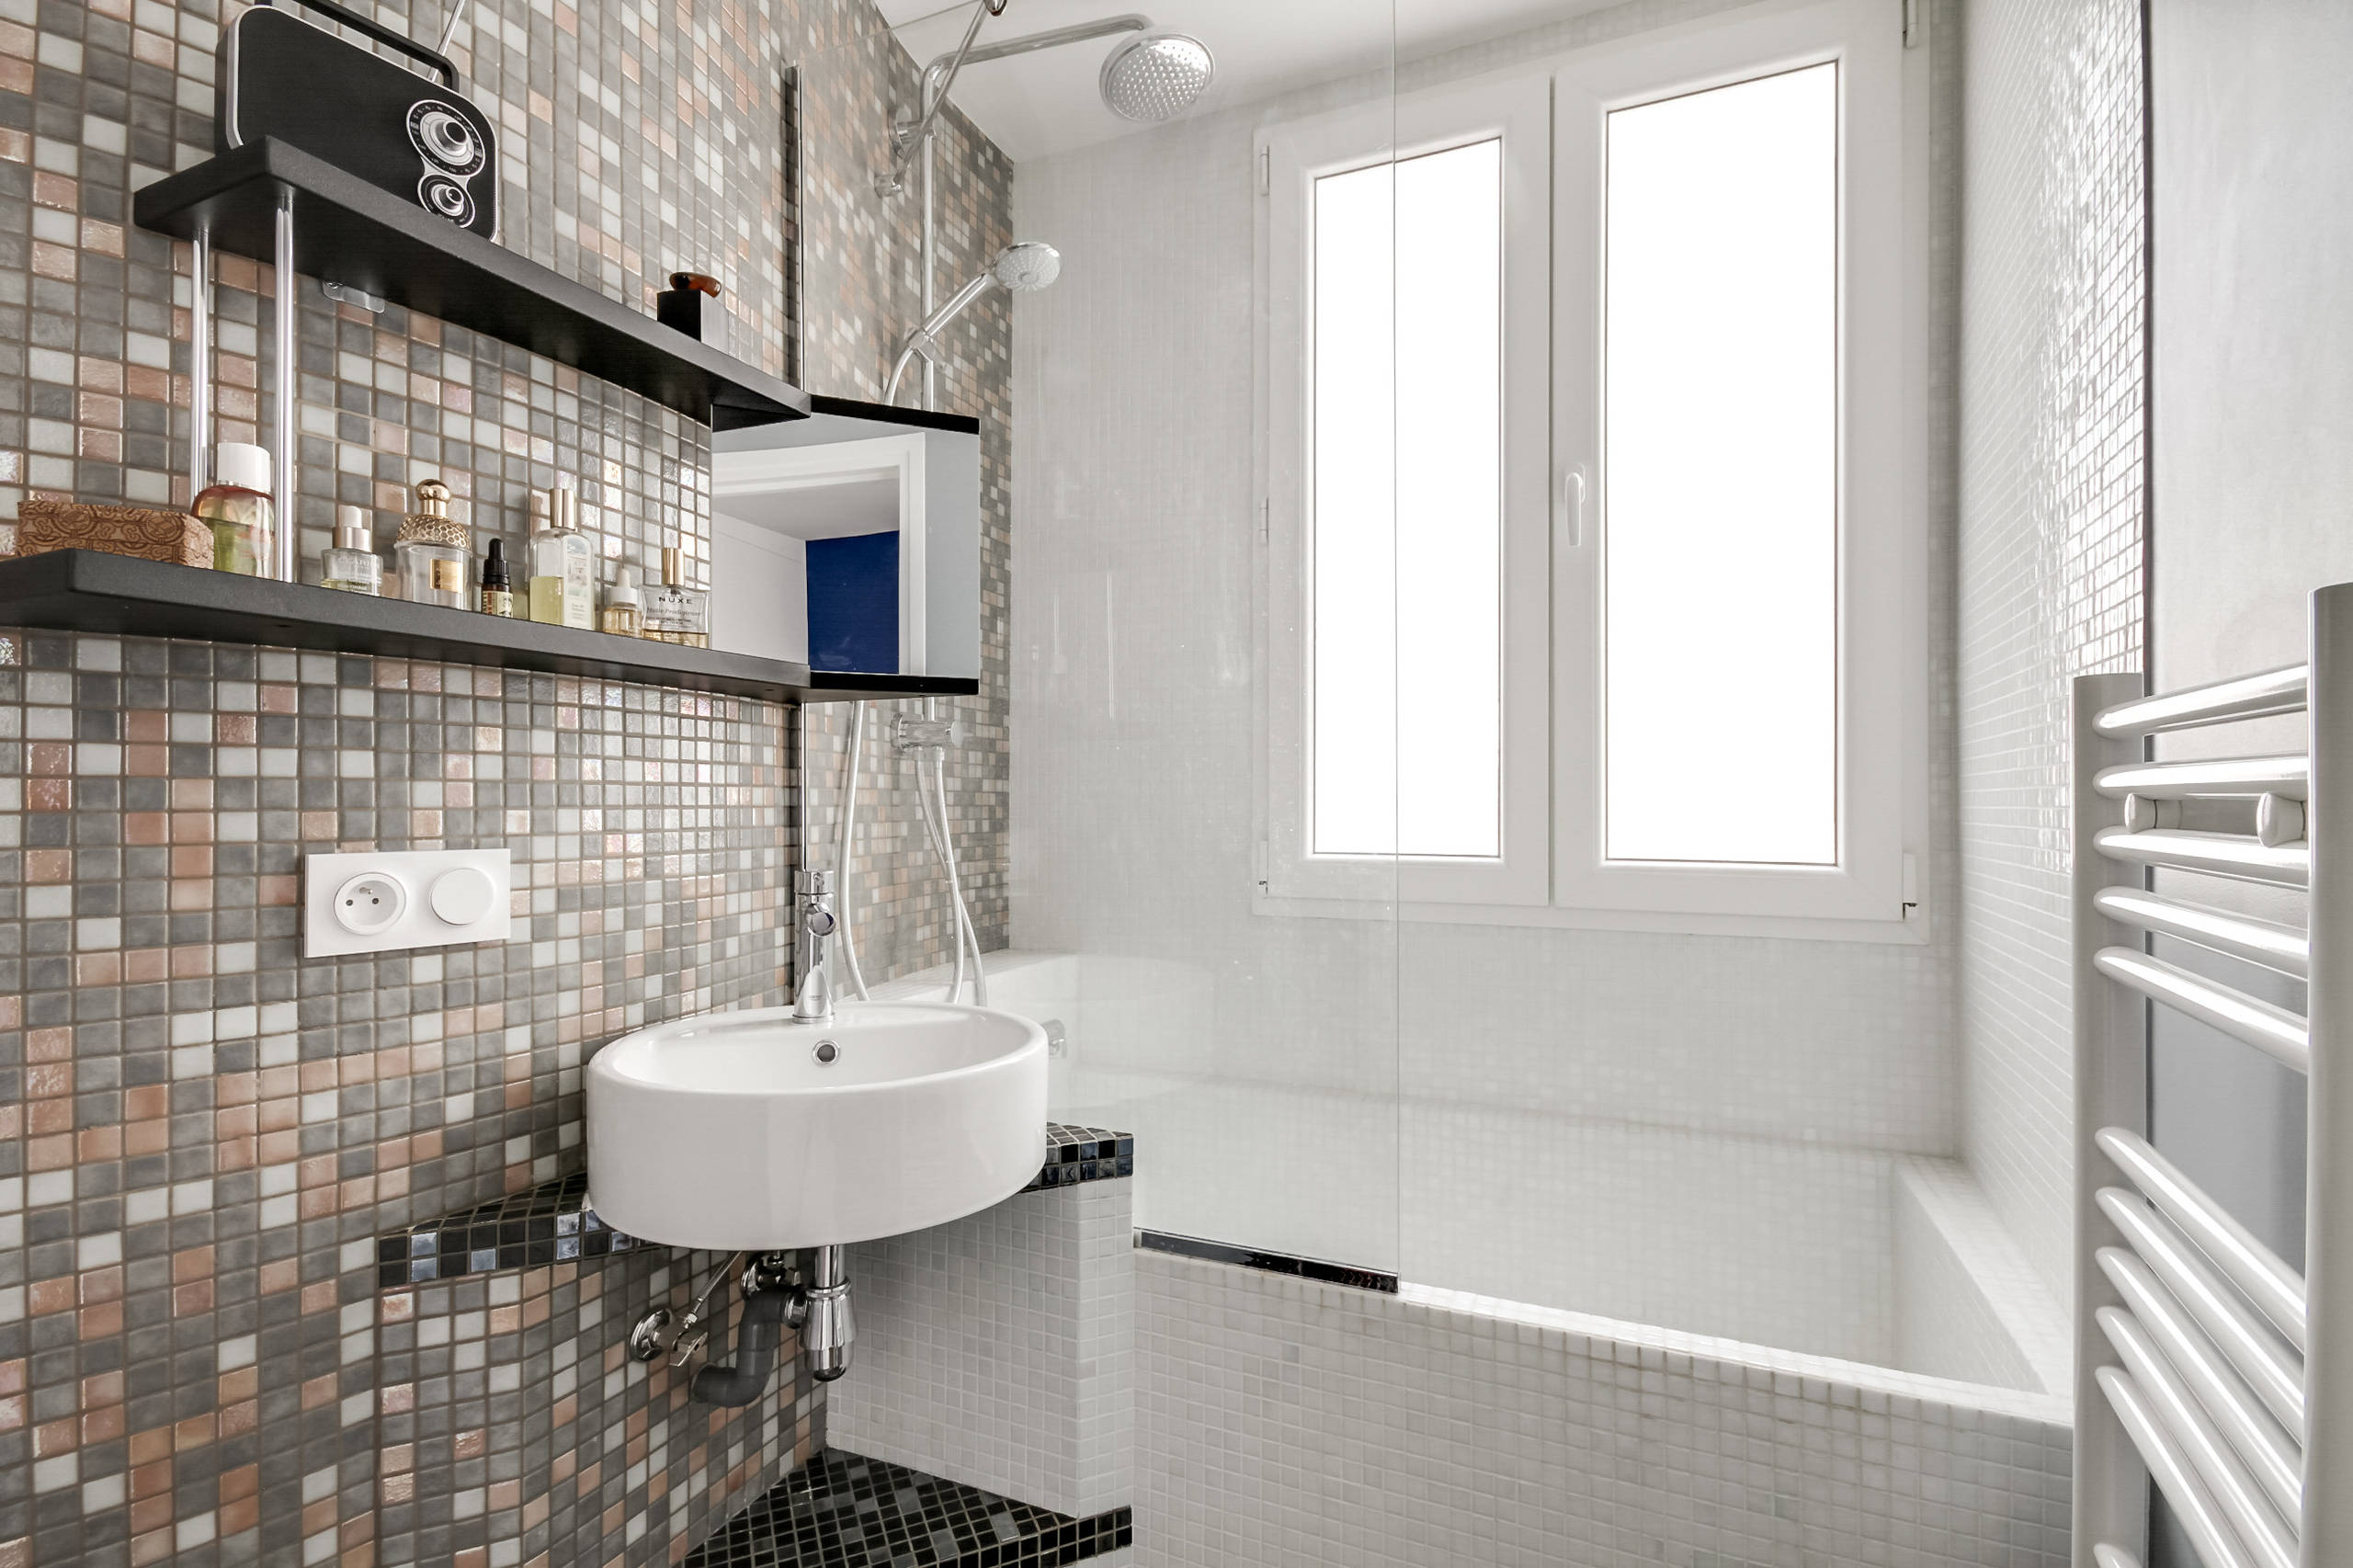 Salle de bain contemporaine - Pixel